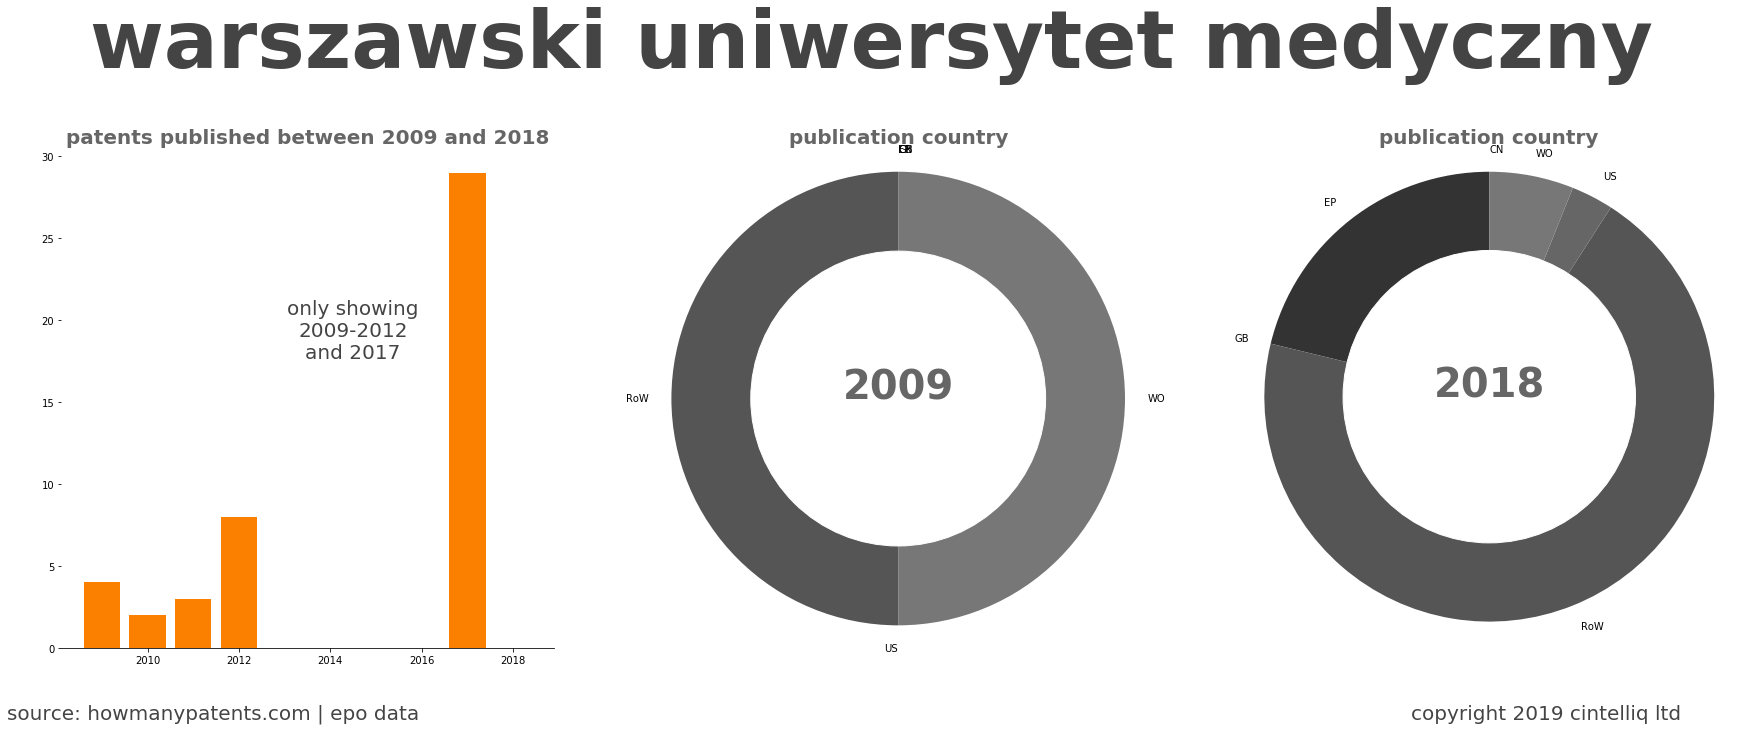 summary of patents for Warszawski Uniwersytet Medyczny